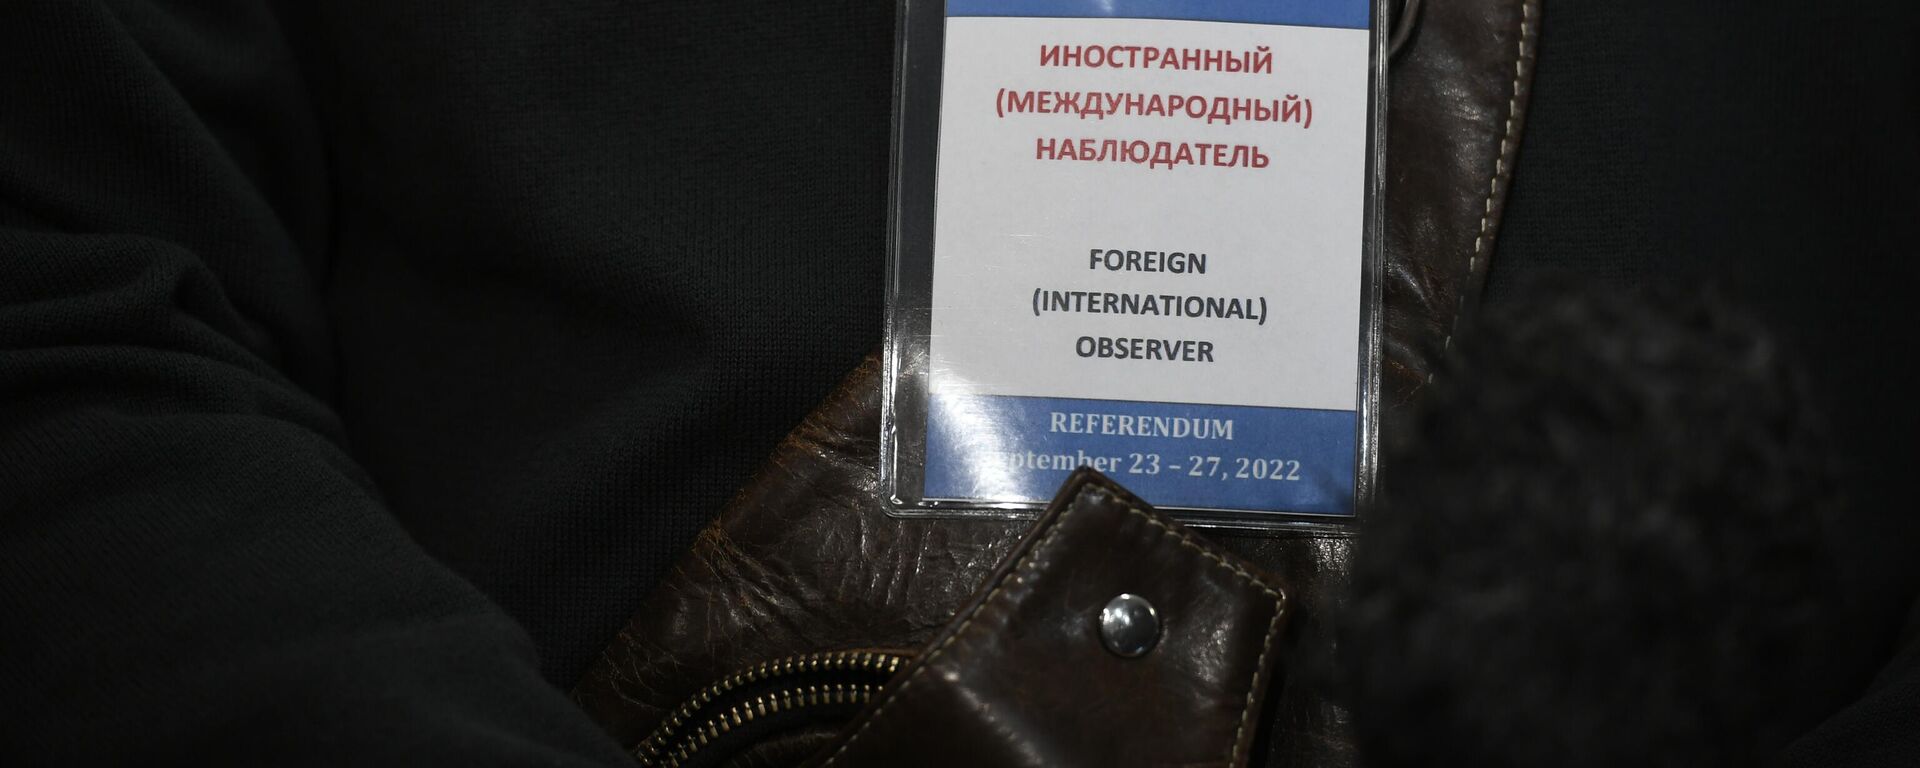 Le badge d'un observateur international des référendums sur l'adhésion des Républiques du Donbass, des régions de Zaporojié et de Kherson à la Russie - Sputnik Afrique, 1920, 25.09.2022